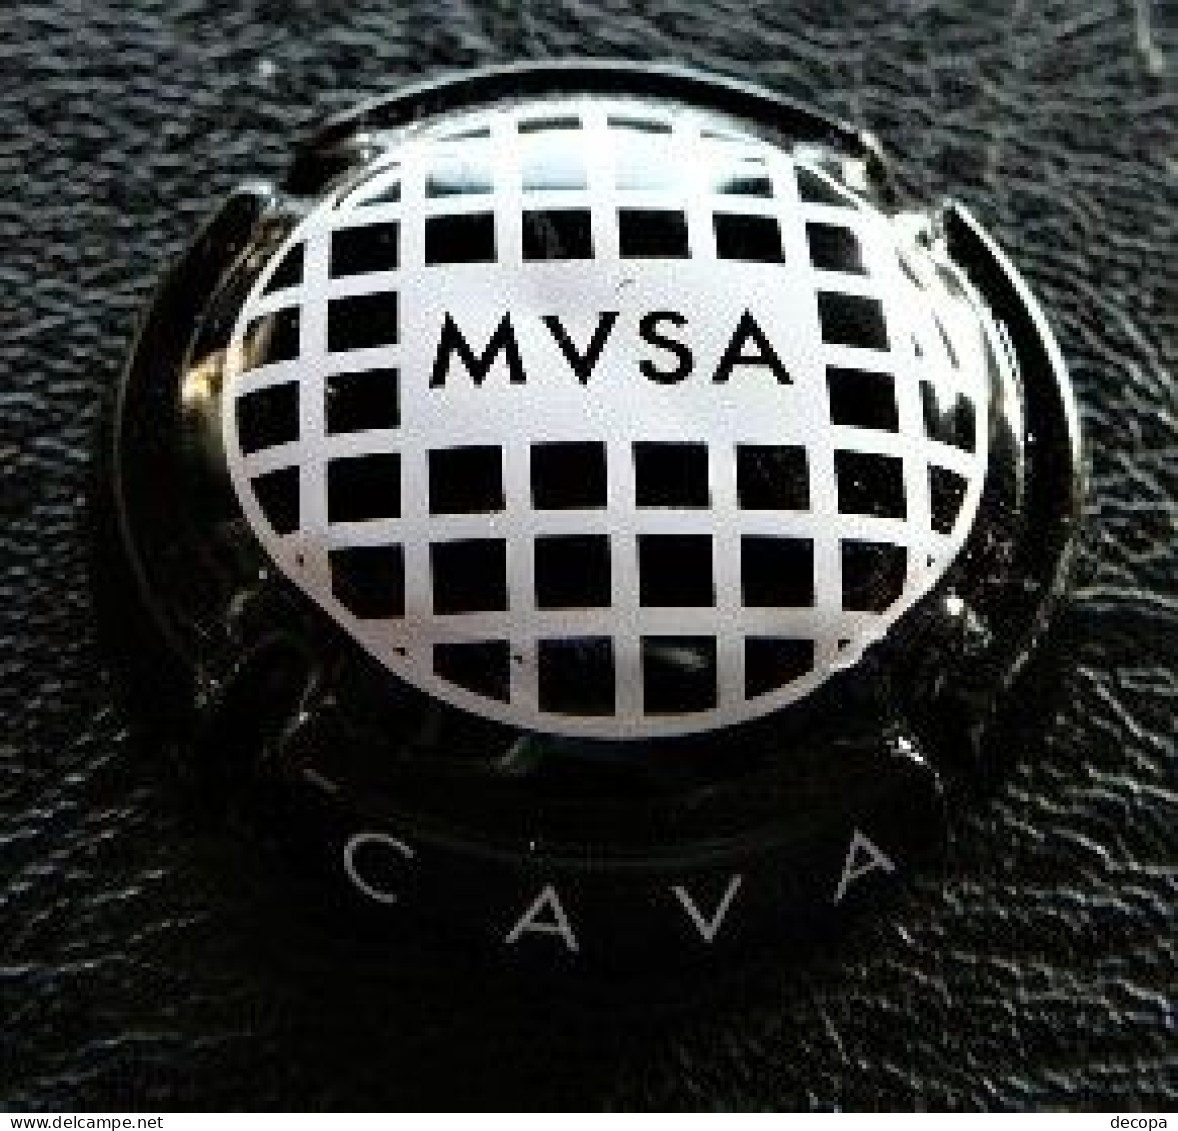 (dc-145)  Capsule  MVSA  Vallformosa   Majescules   CAVA - Mousseux